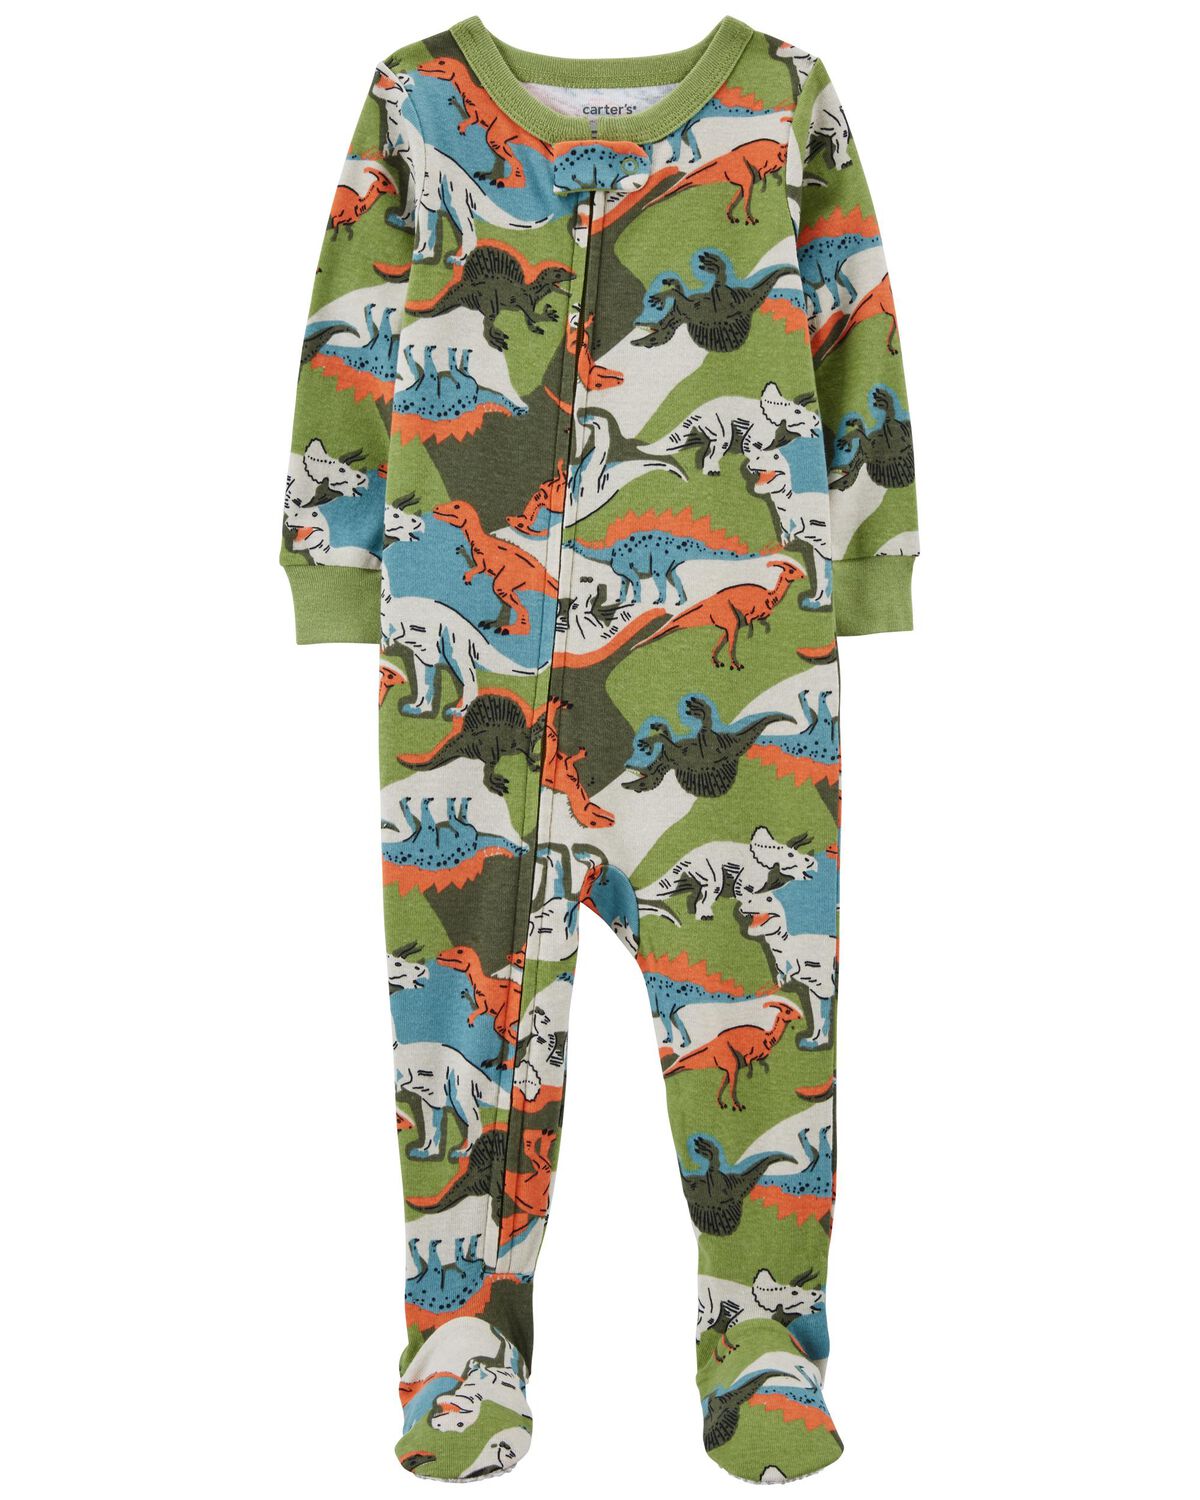 Toddler 1-Piece Dinosaur 100% Snug Fit Cotton Footie Pajamas